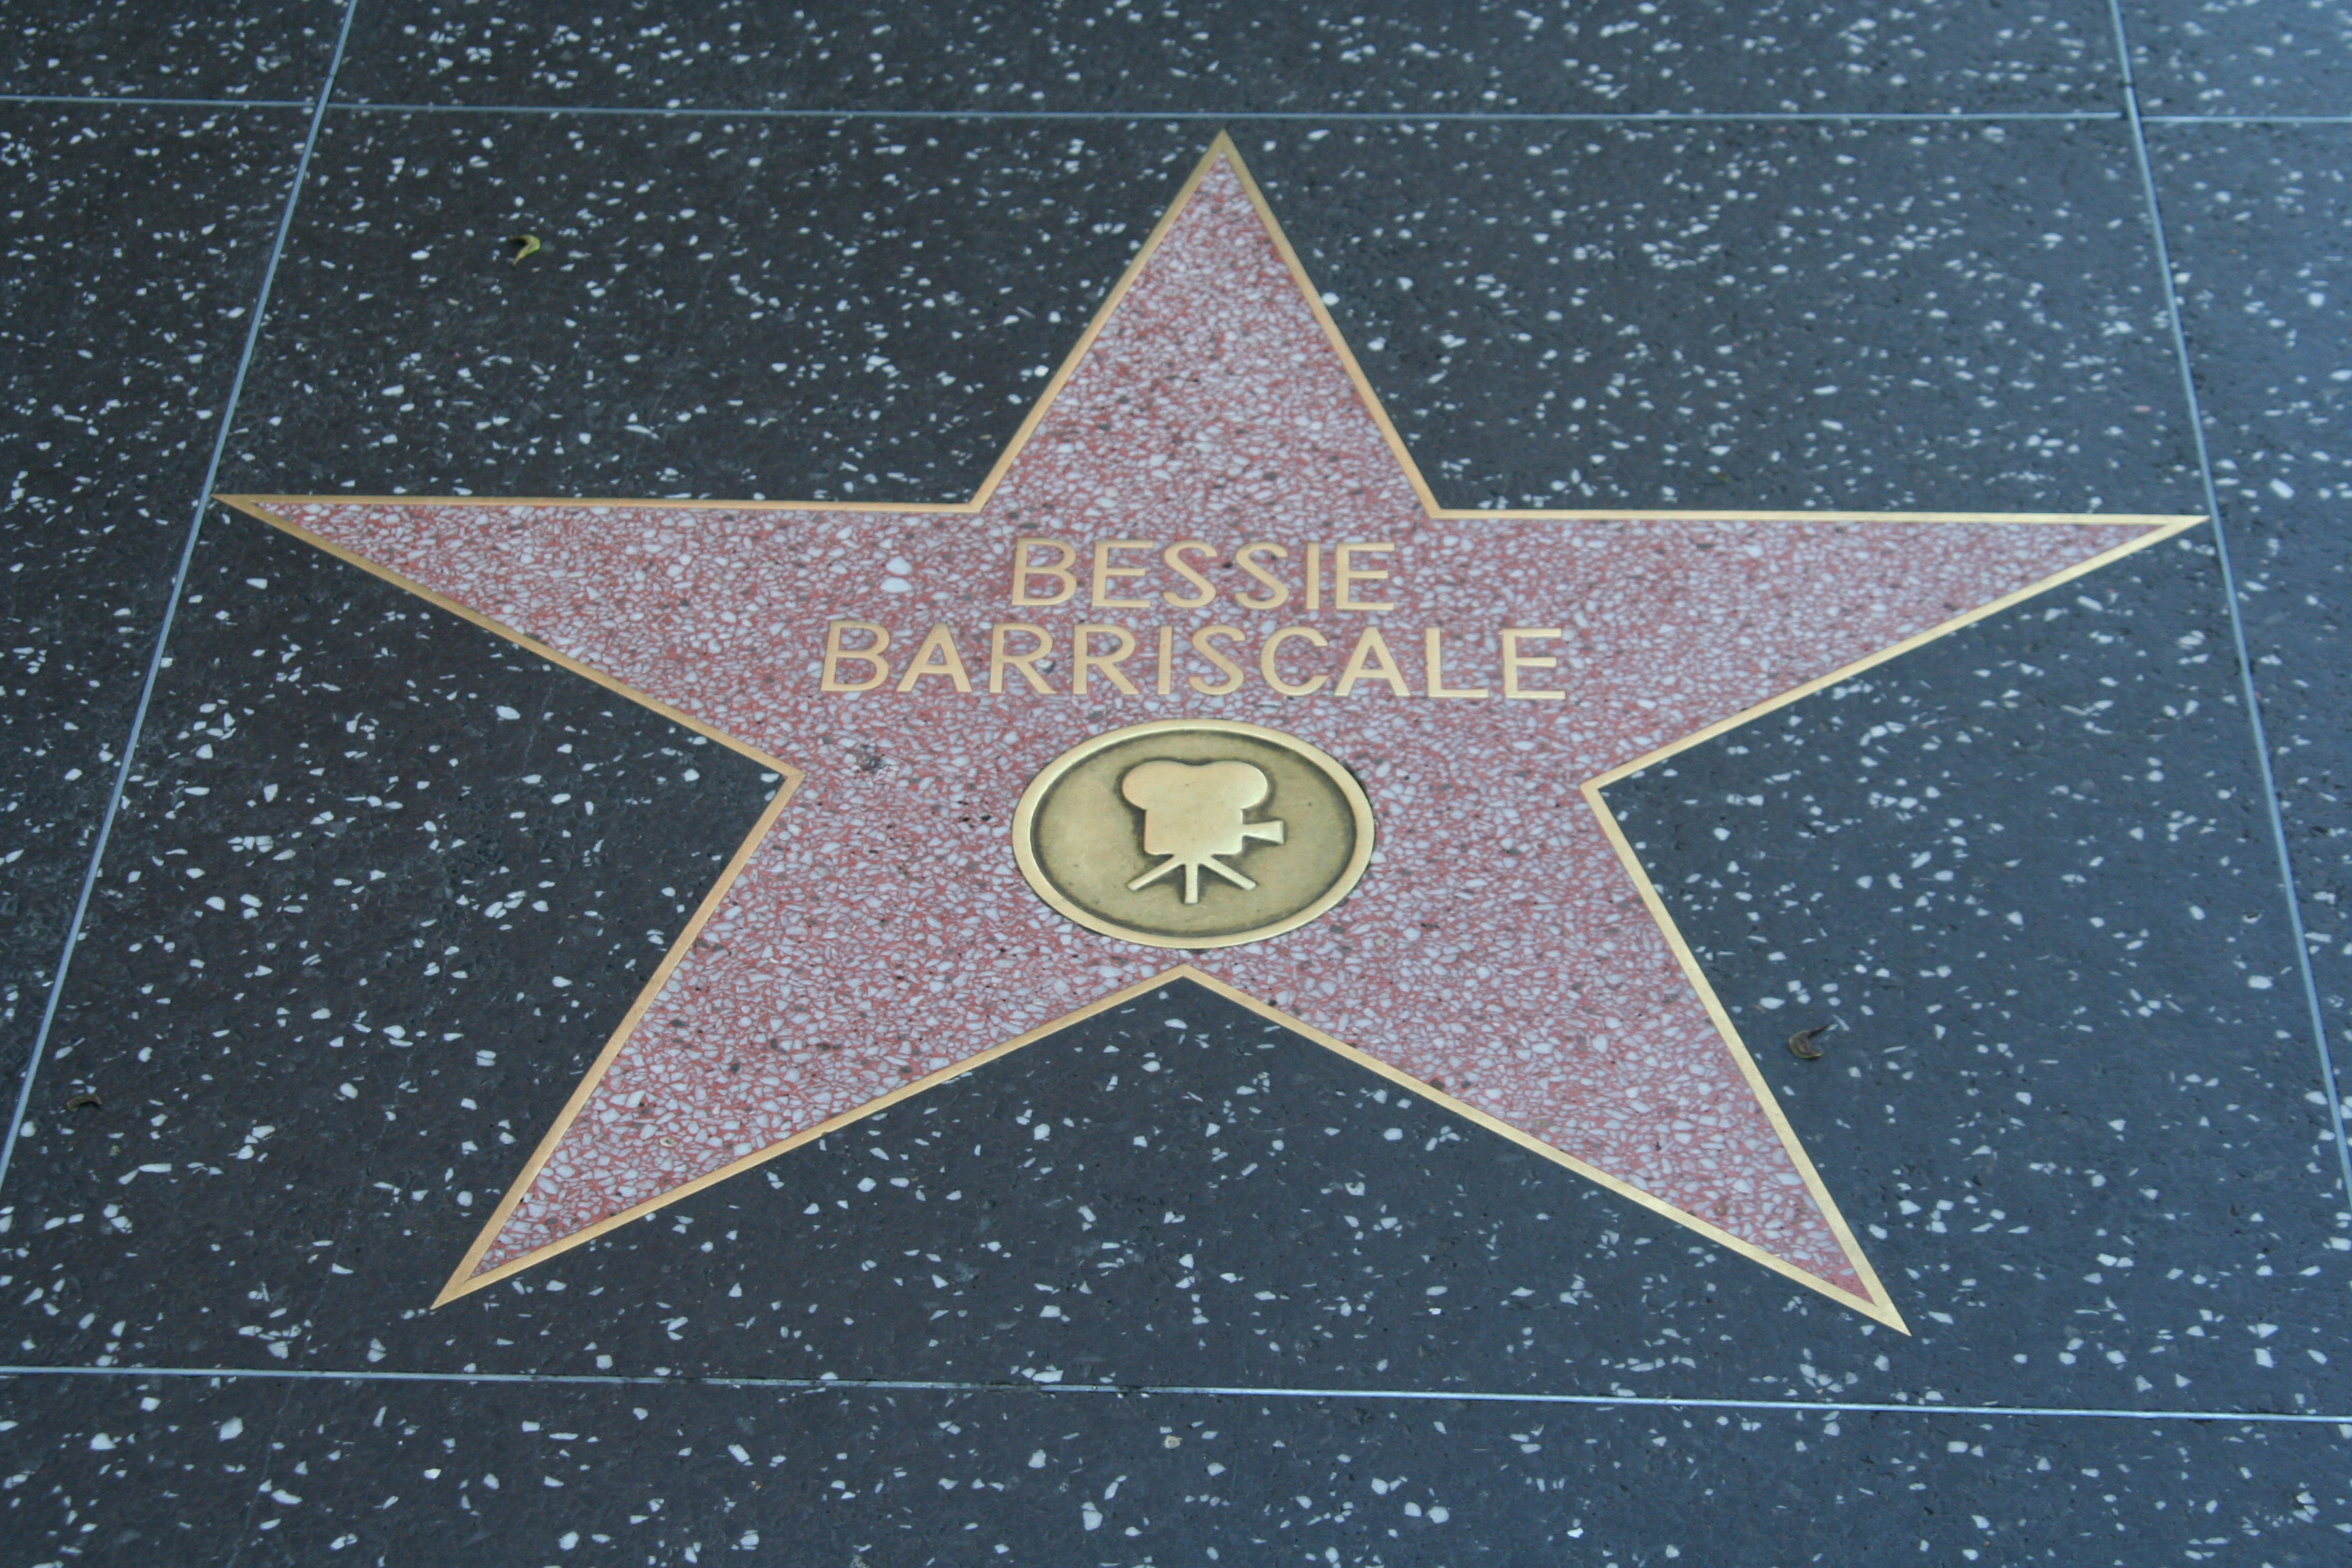 bessie-barriscale-movies